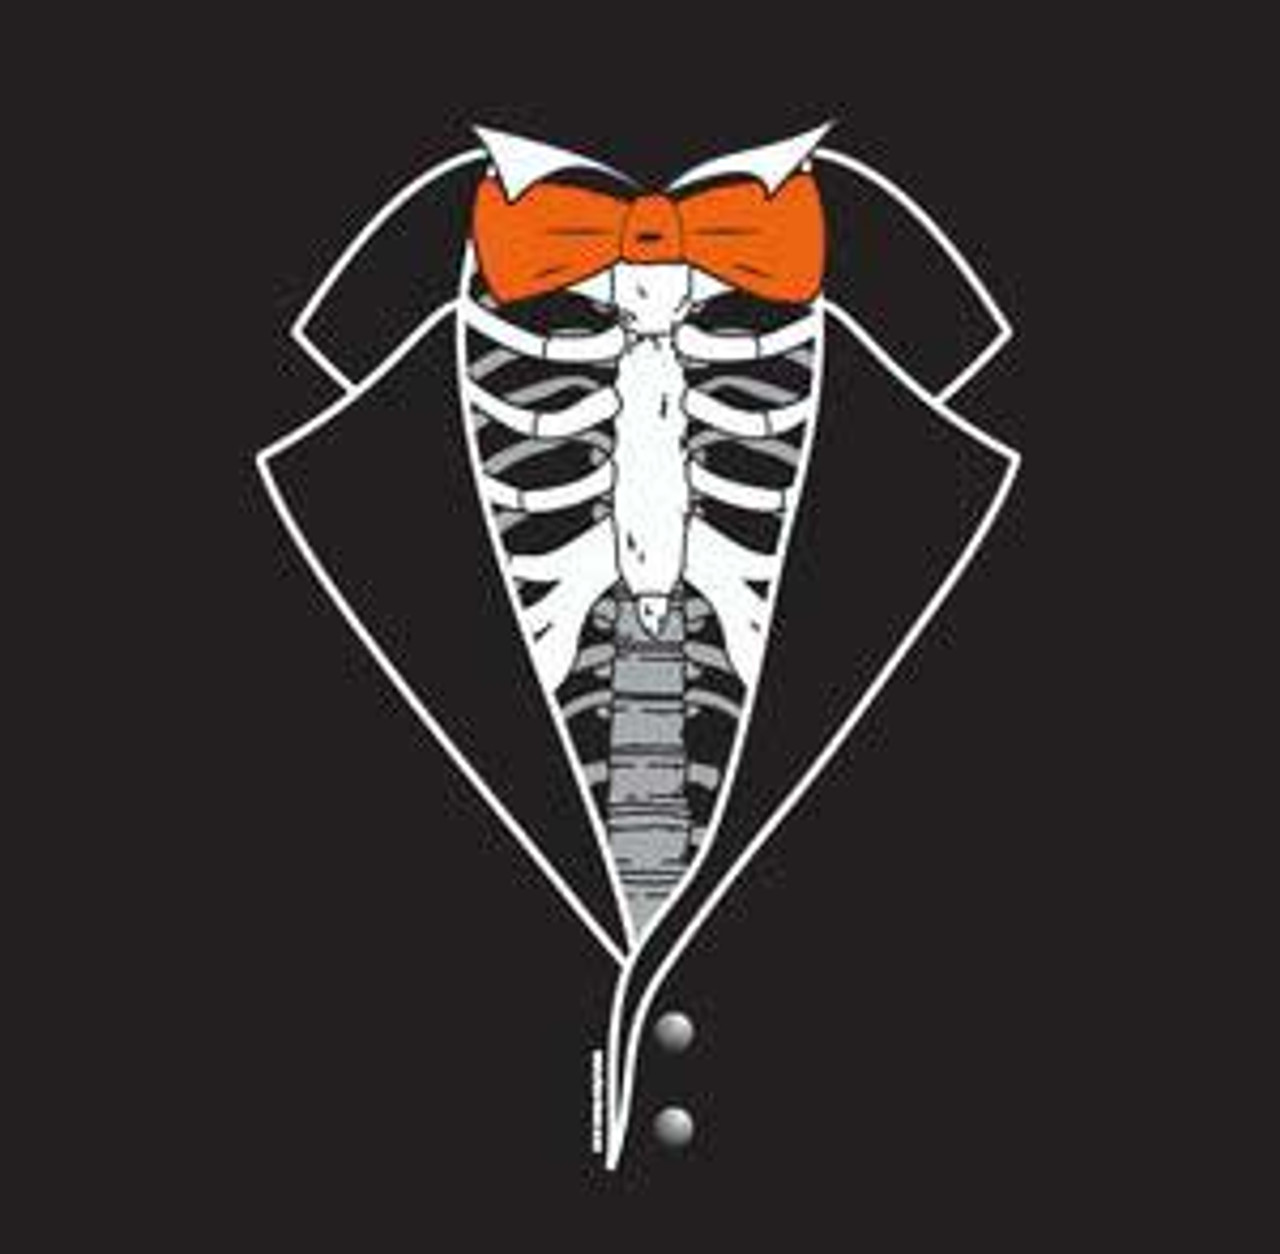 Dem Bones Tuxedo T-shirt with Orange Tie - Halloween Special